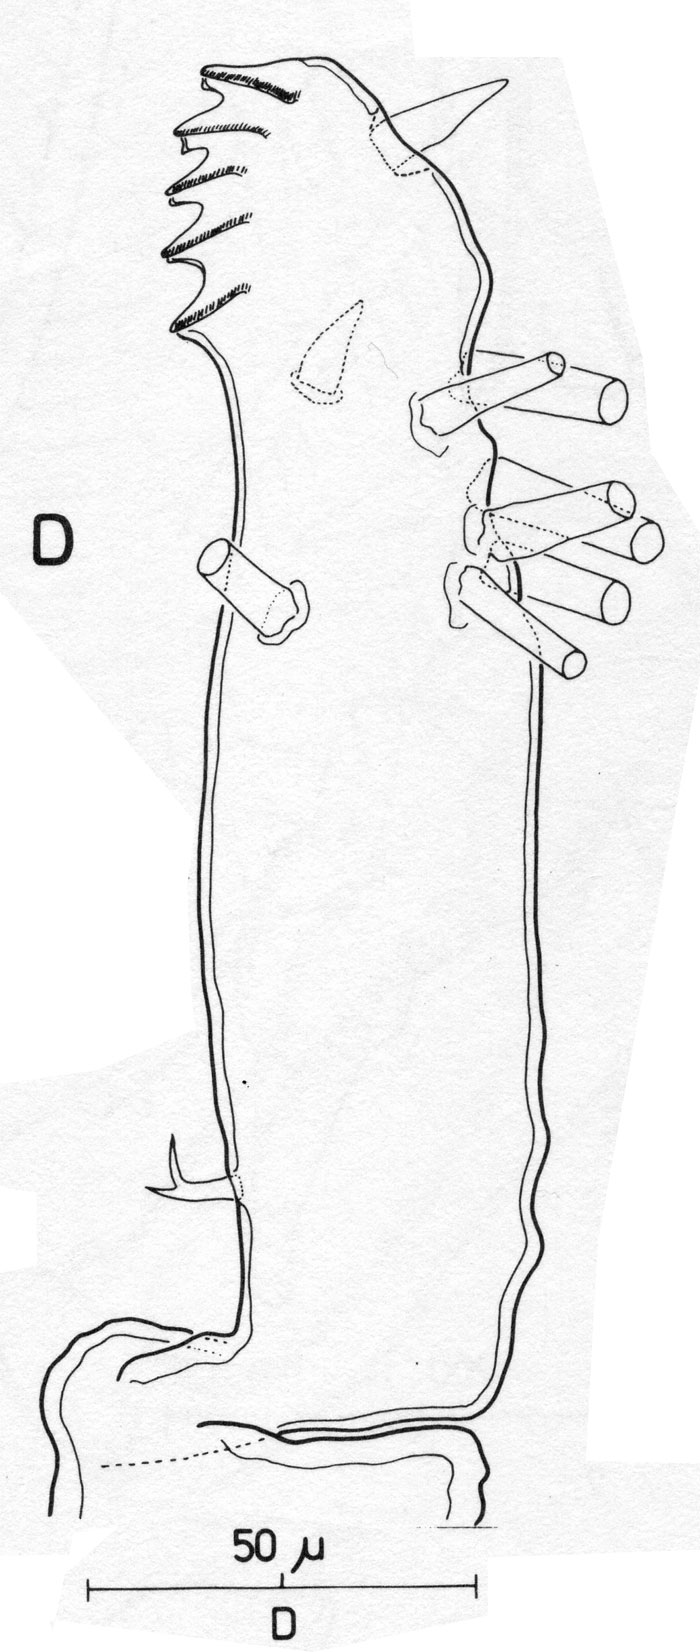 Espce Monstrilla helgolandica - Planche 2 de figures morphologiques